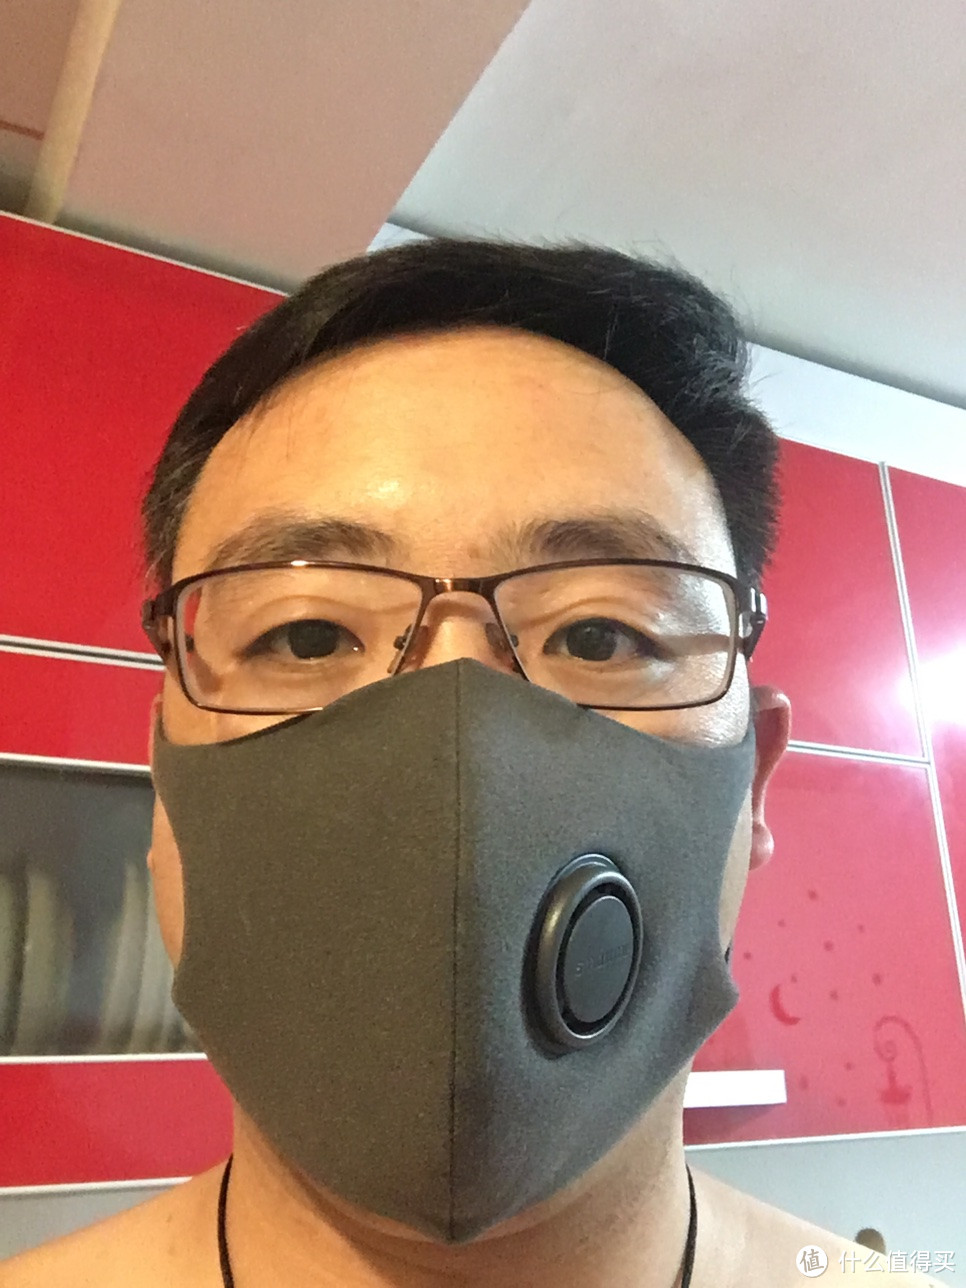 『户外全面净化』智米防霾口罩+智米防霾空调滤芯之体验